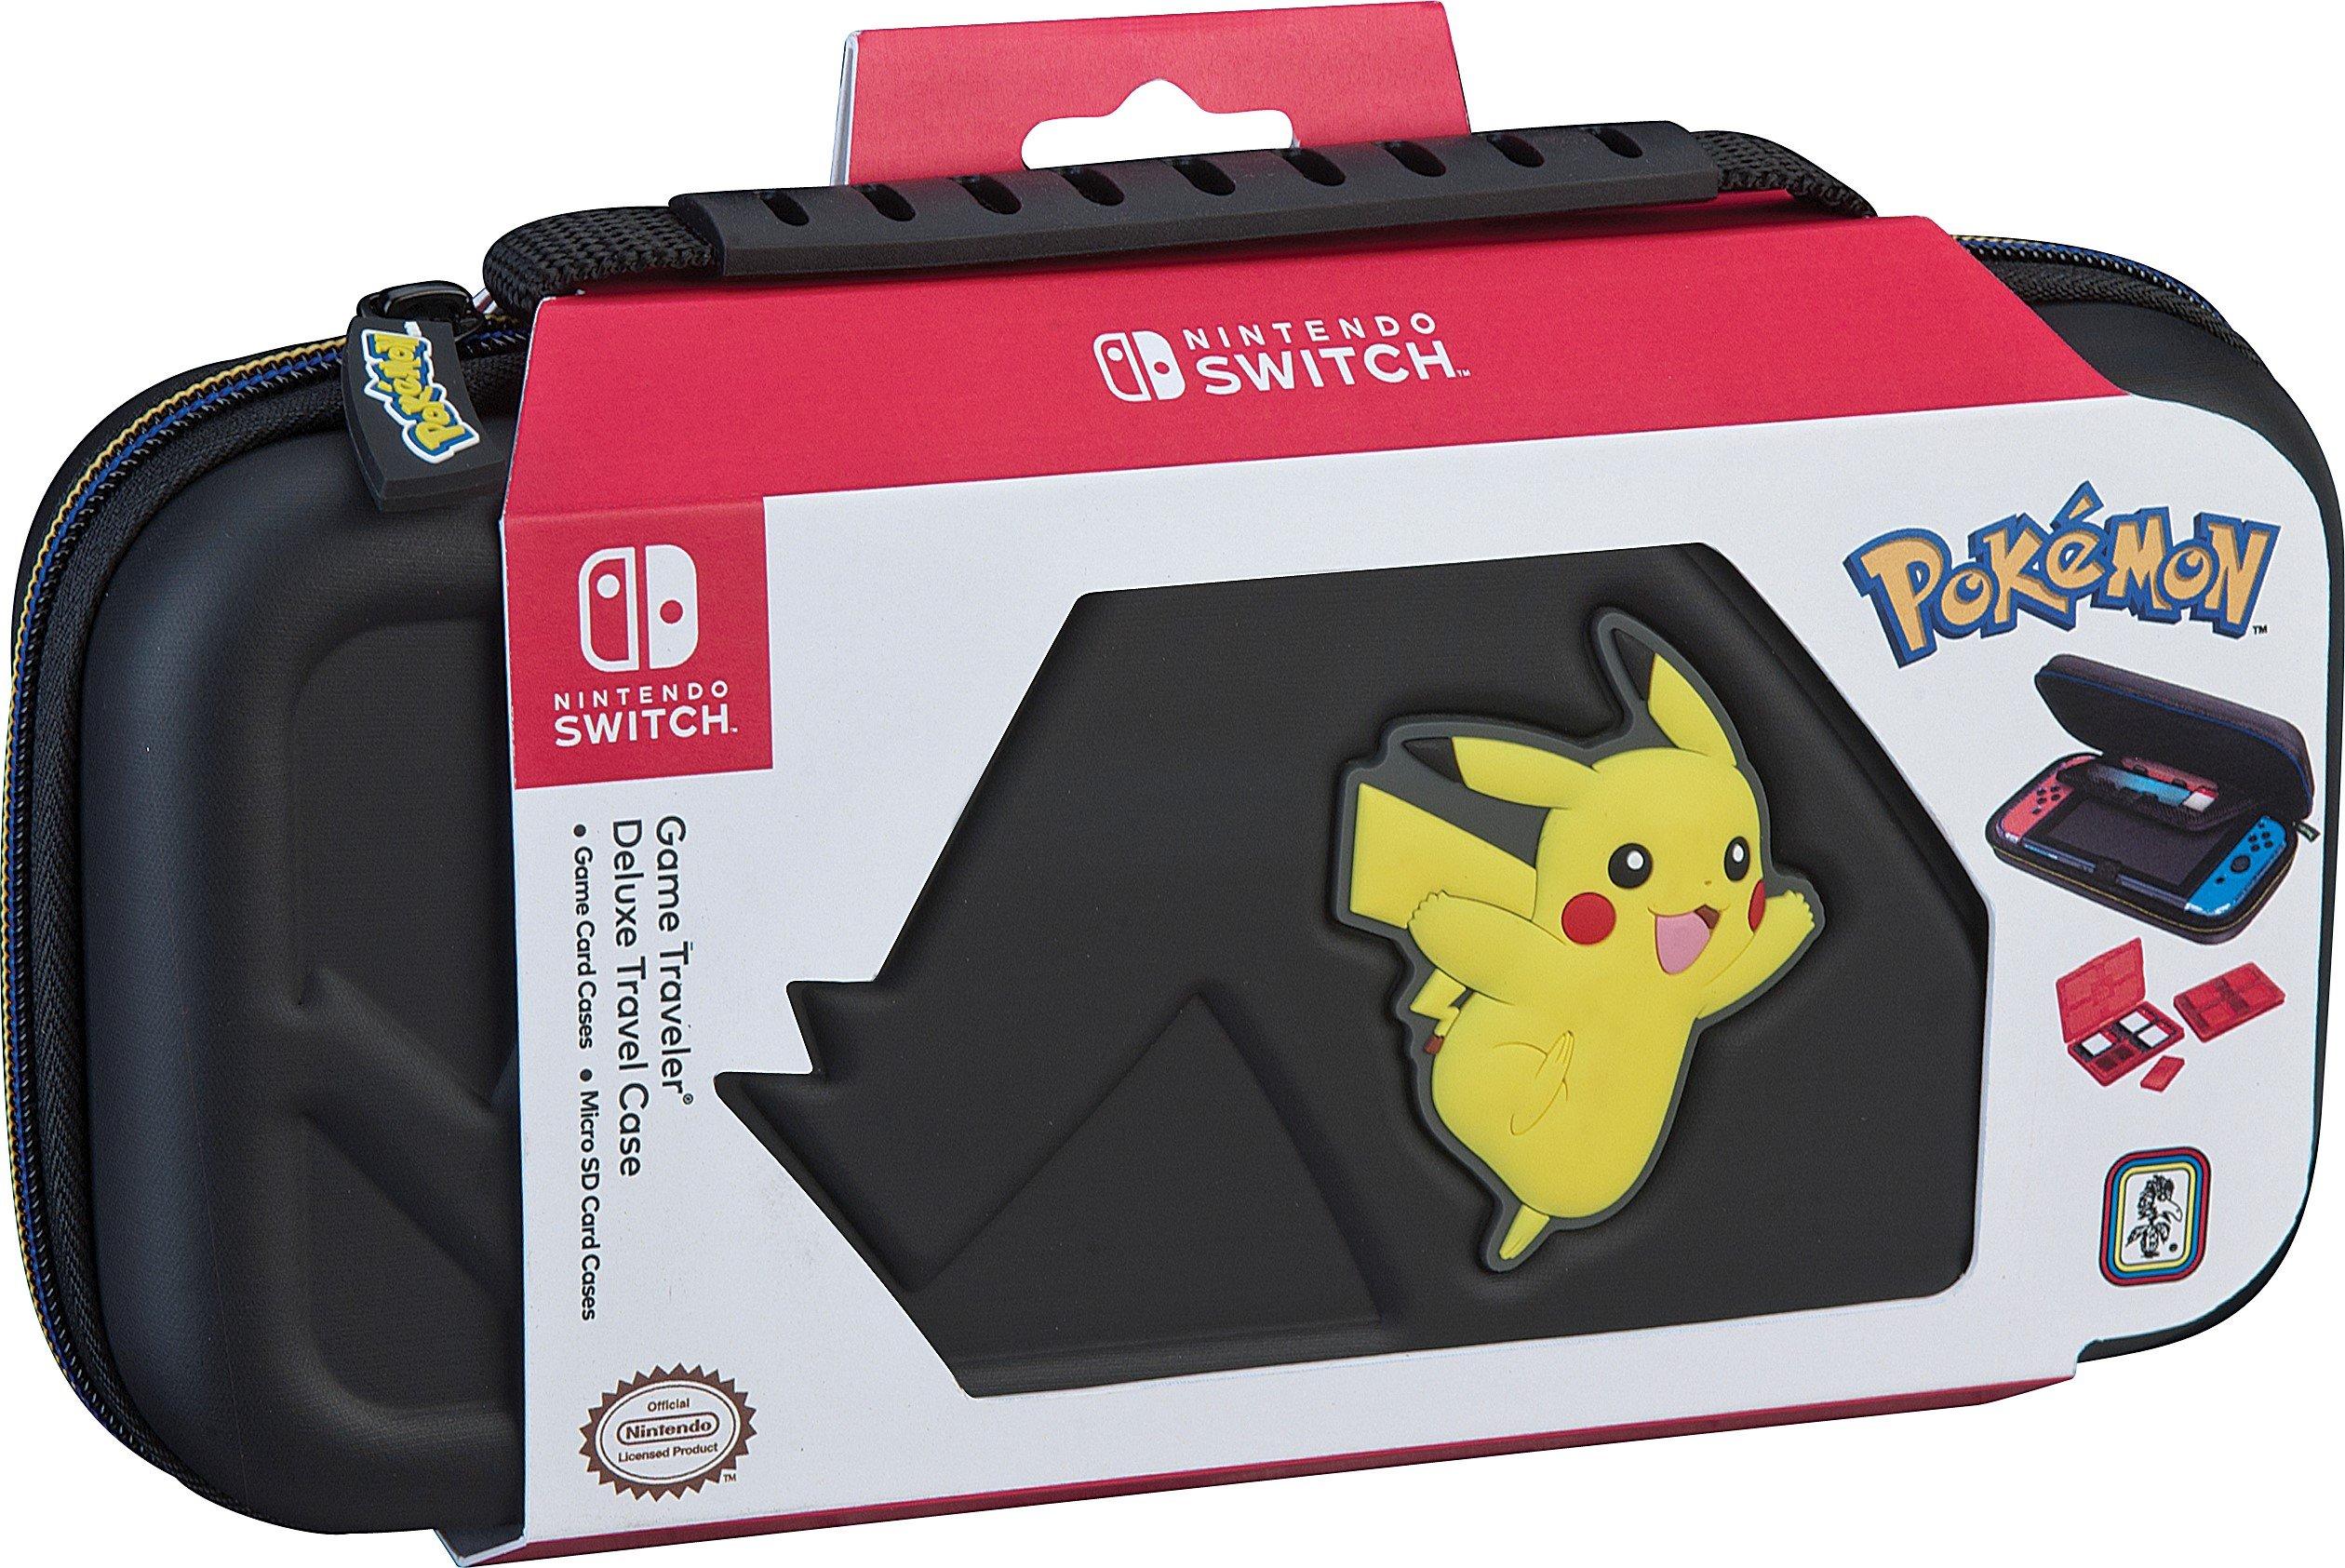 nintendo switch with pikachu